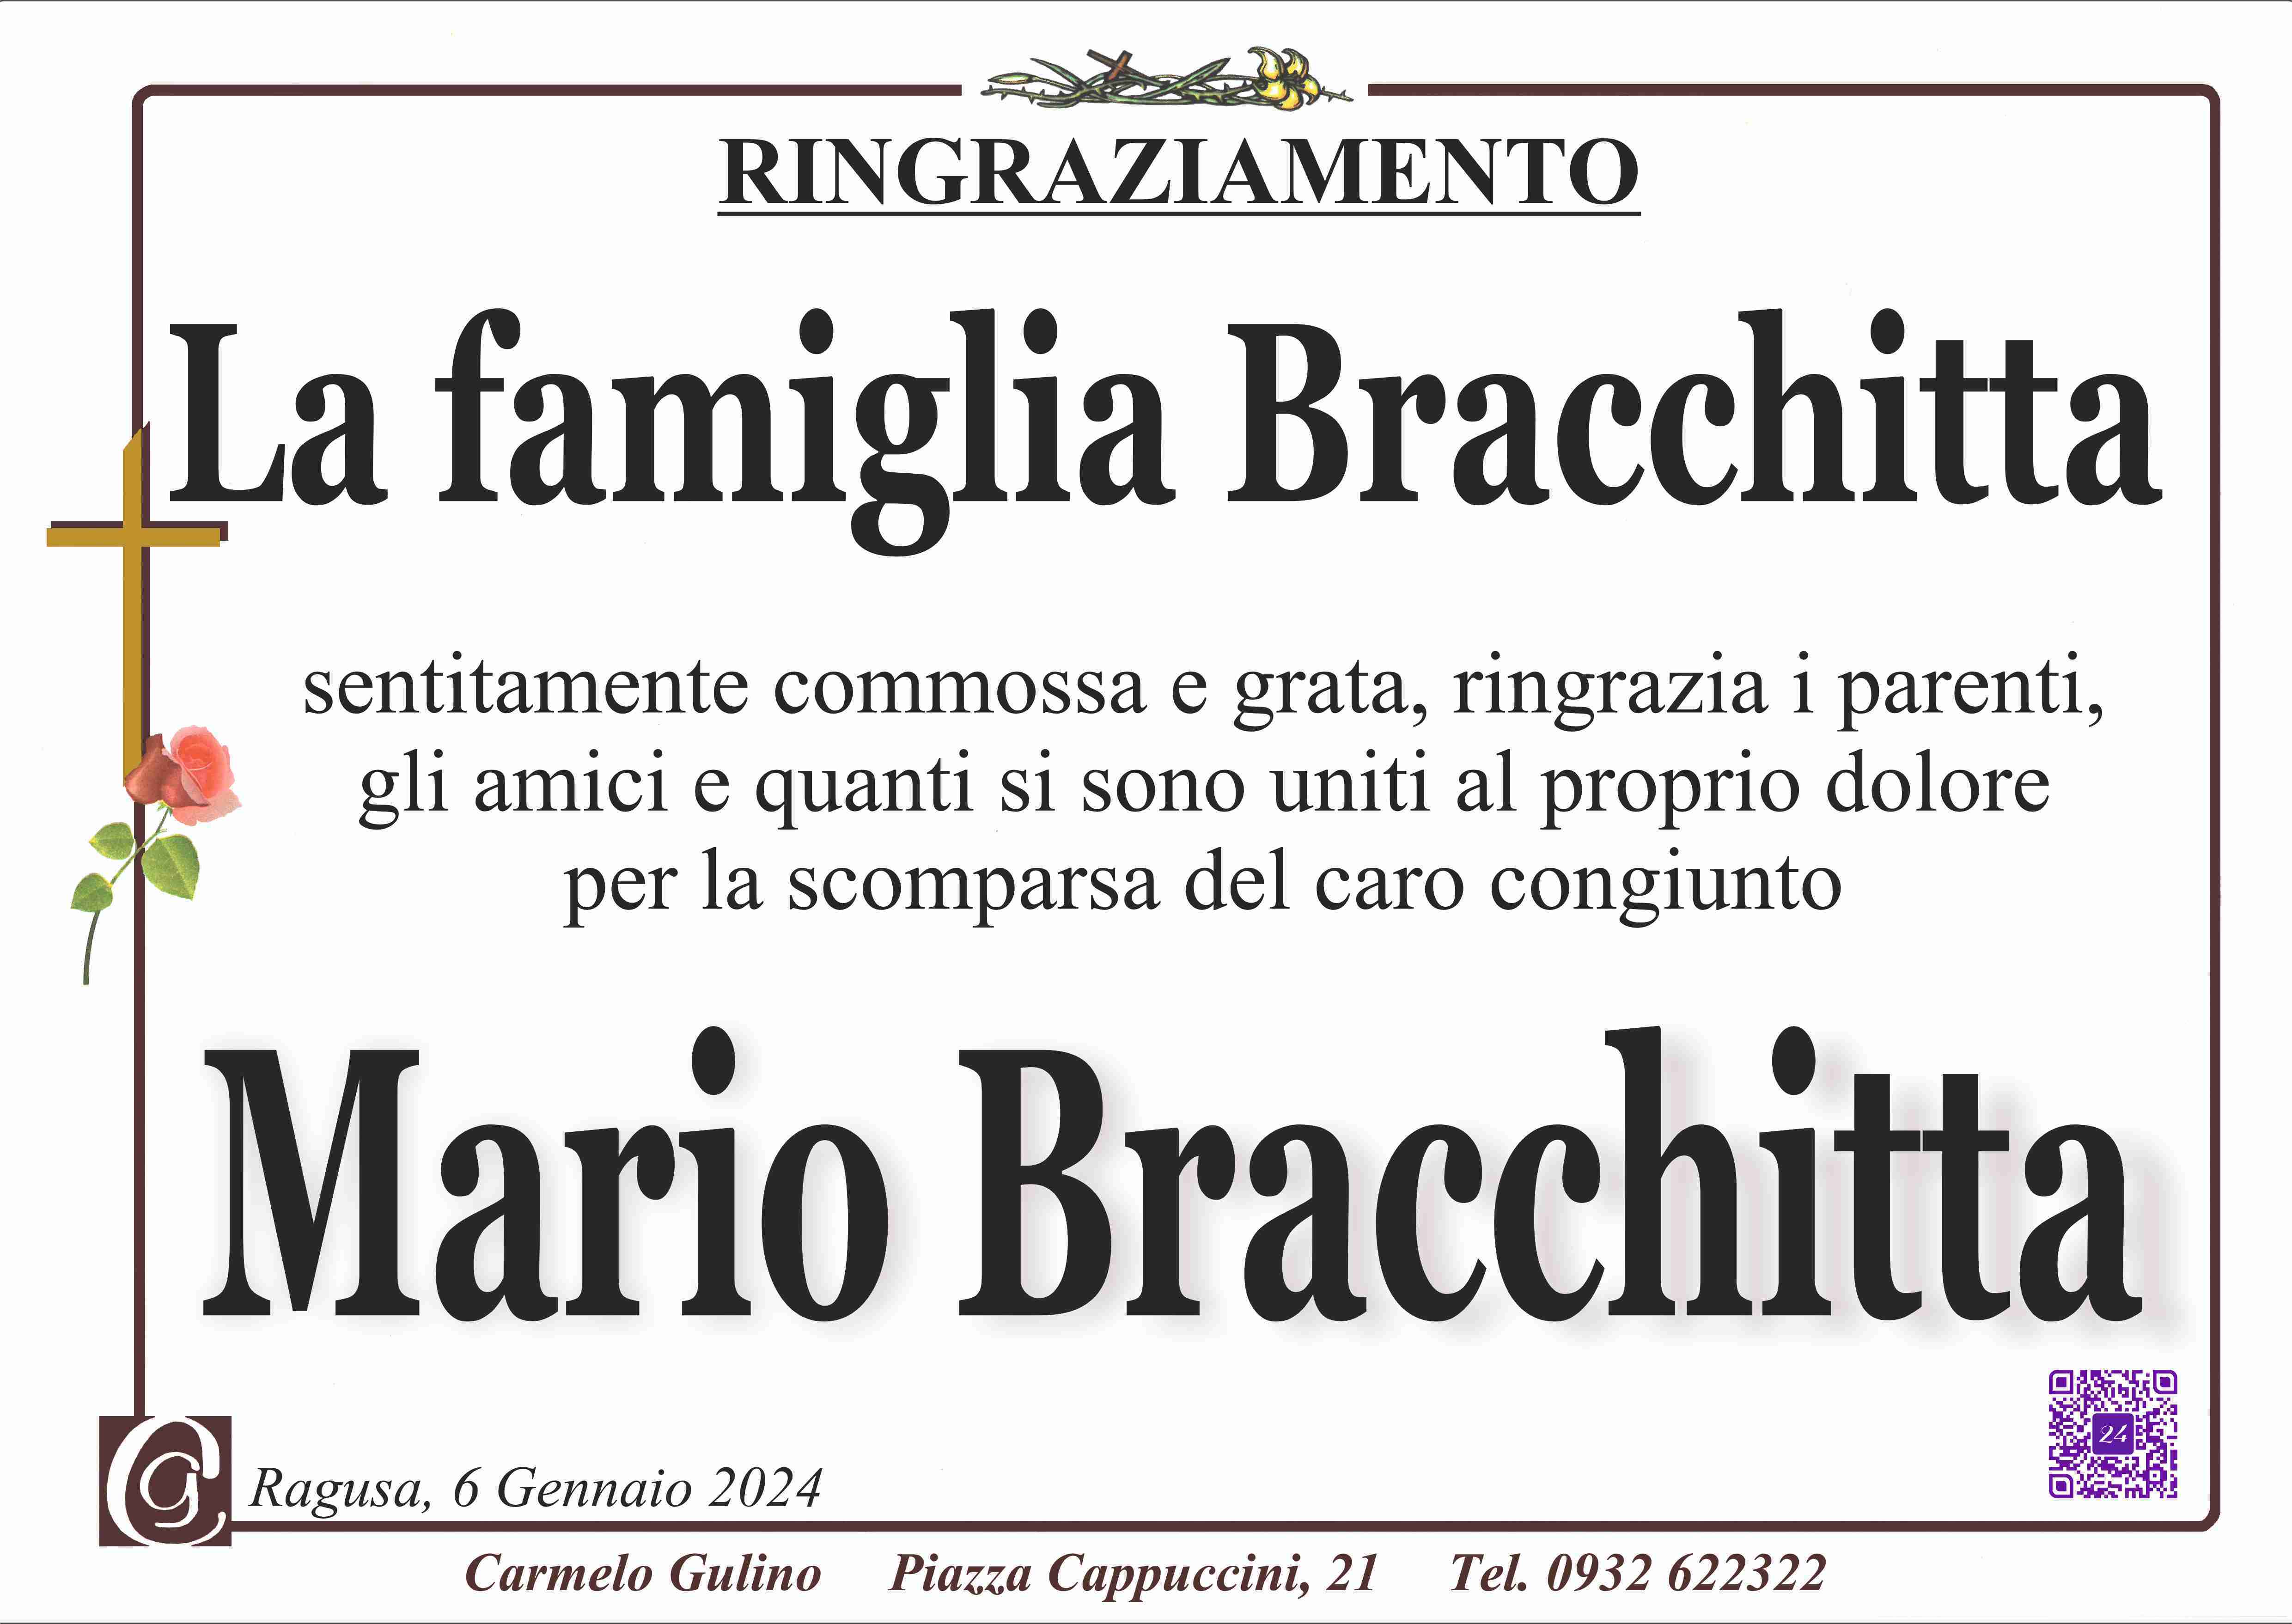 Mario Bracchitta